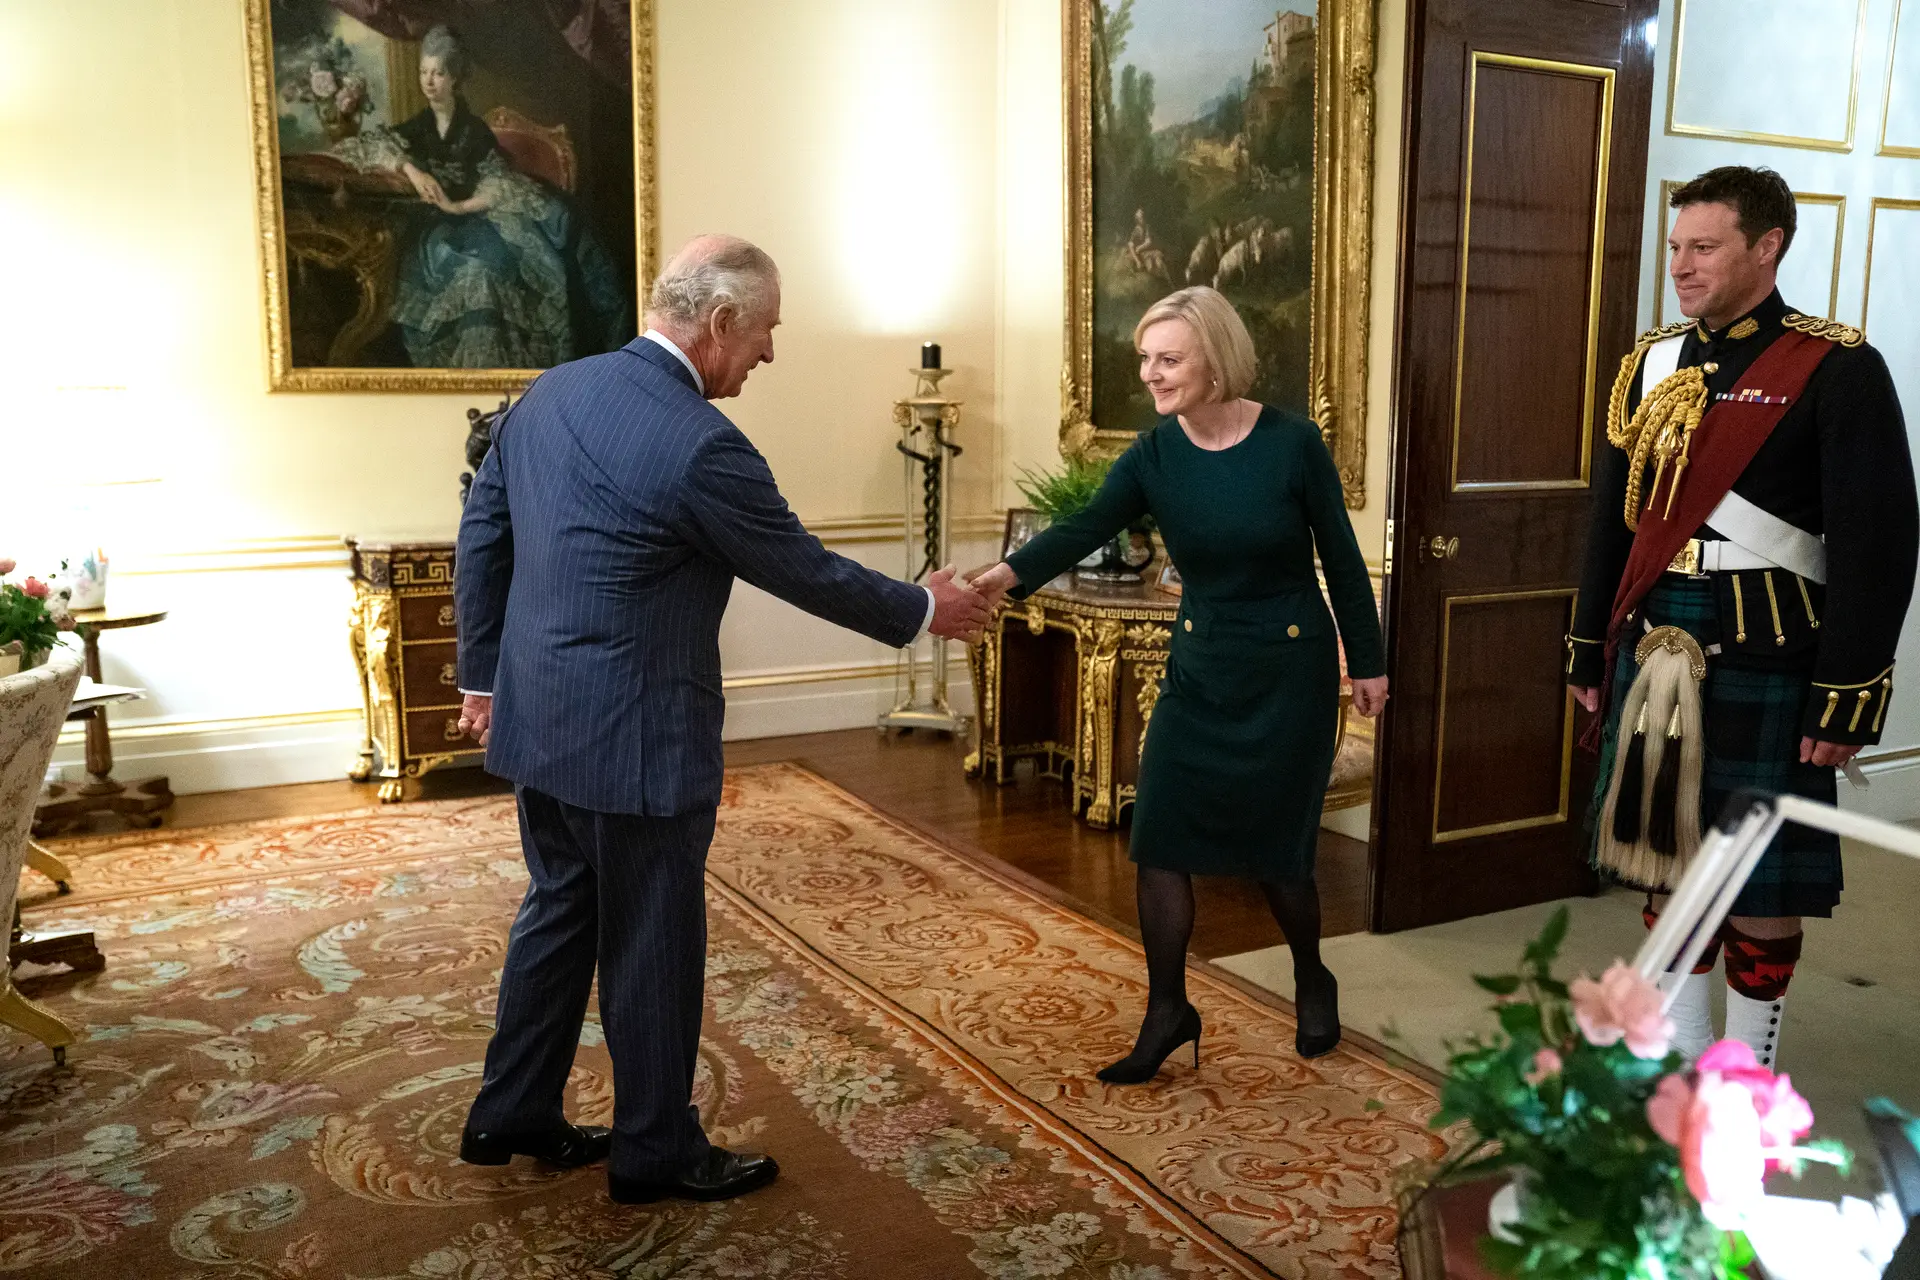 O momento (constrangedor) entre o Rei Carlos III e Liz Truss